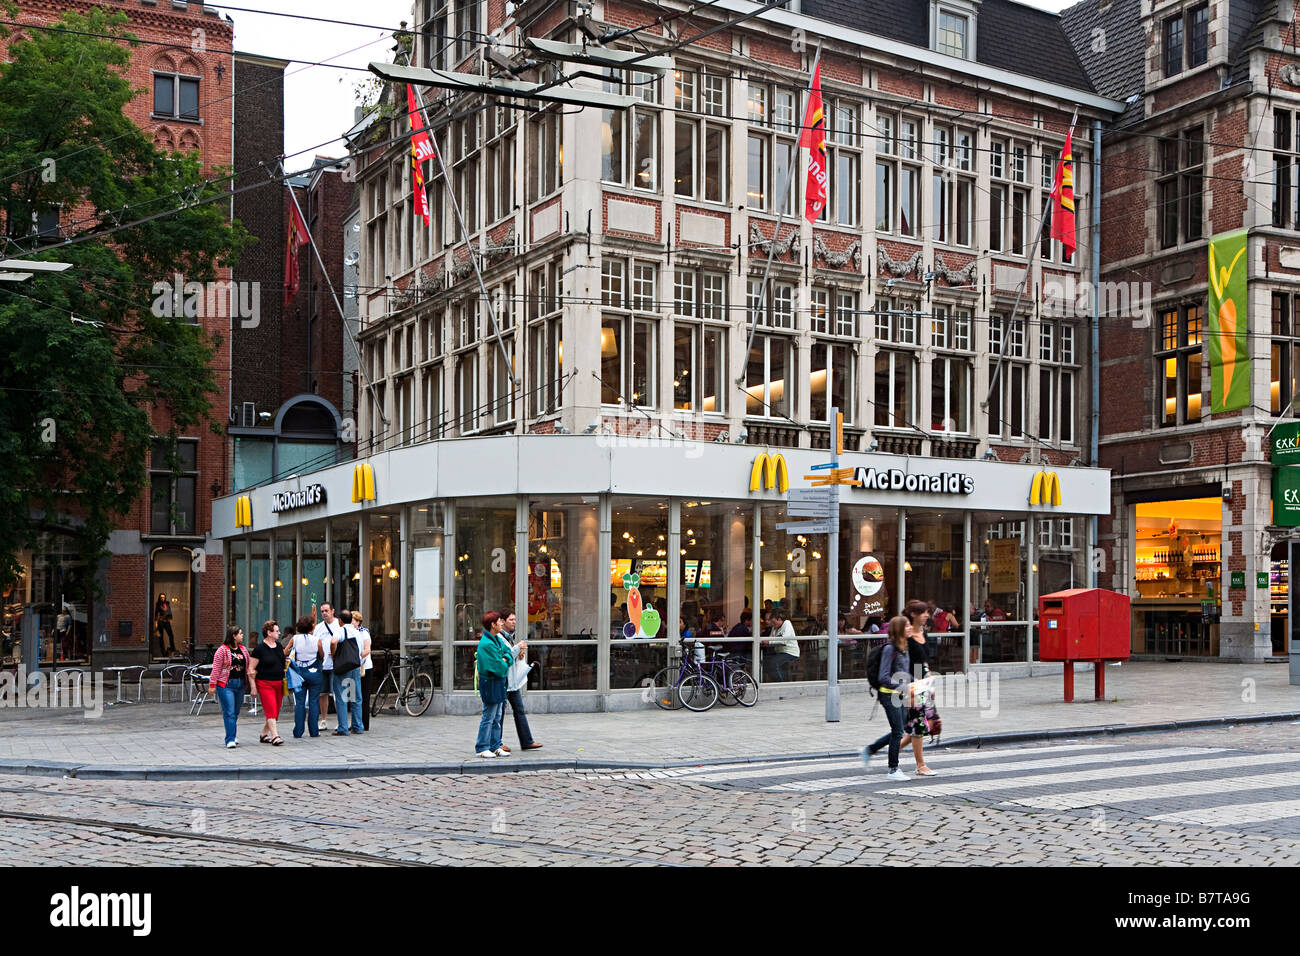 Les gens de rue en dehors d'un restaurant Mcdonald's, avec de nouveaux et de vieux bâtiments Gand Belgique Banque D'Images